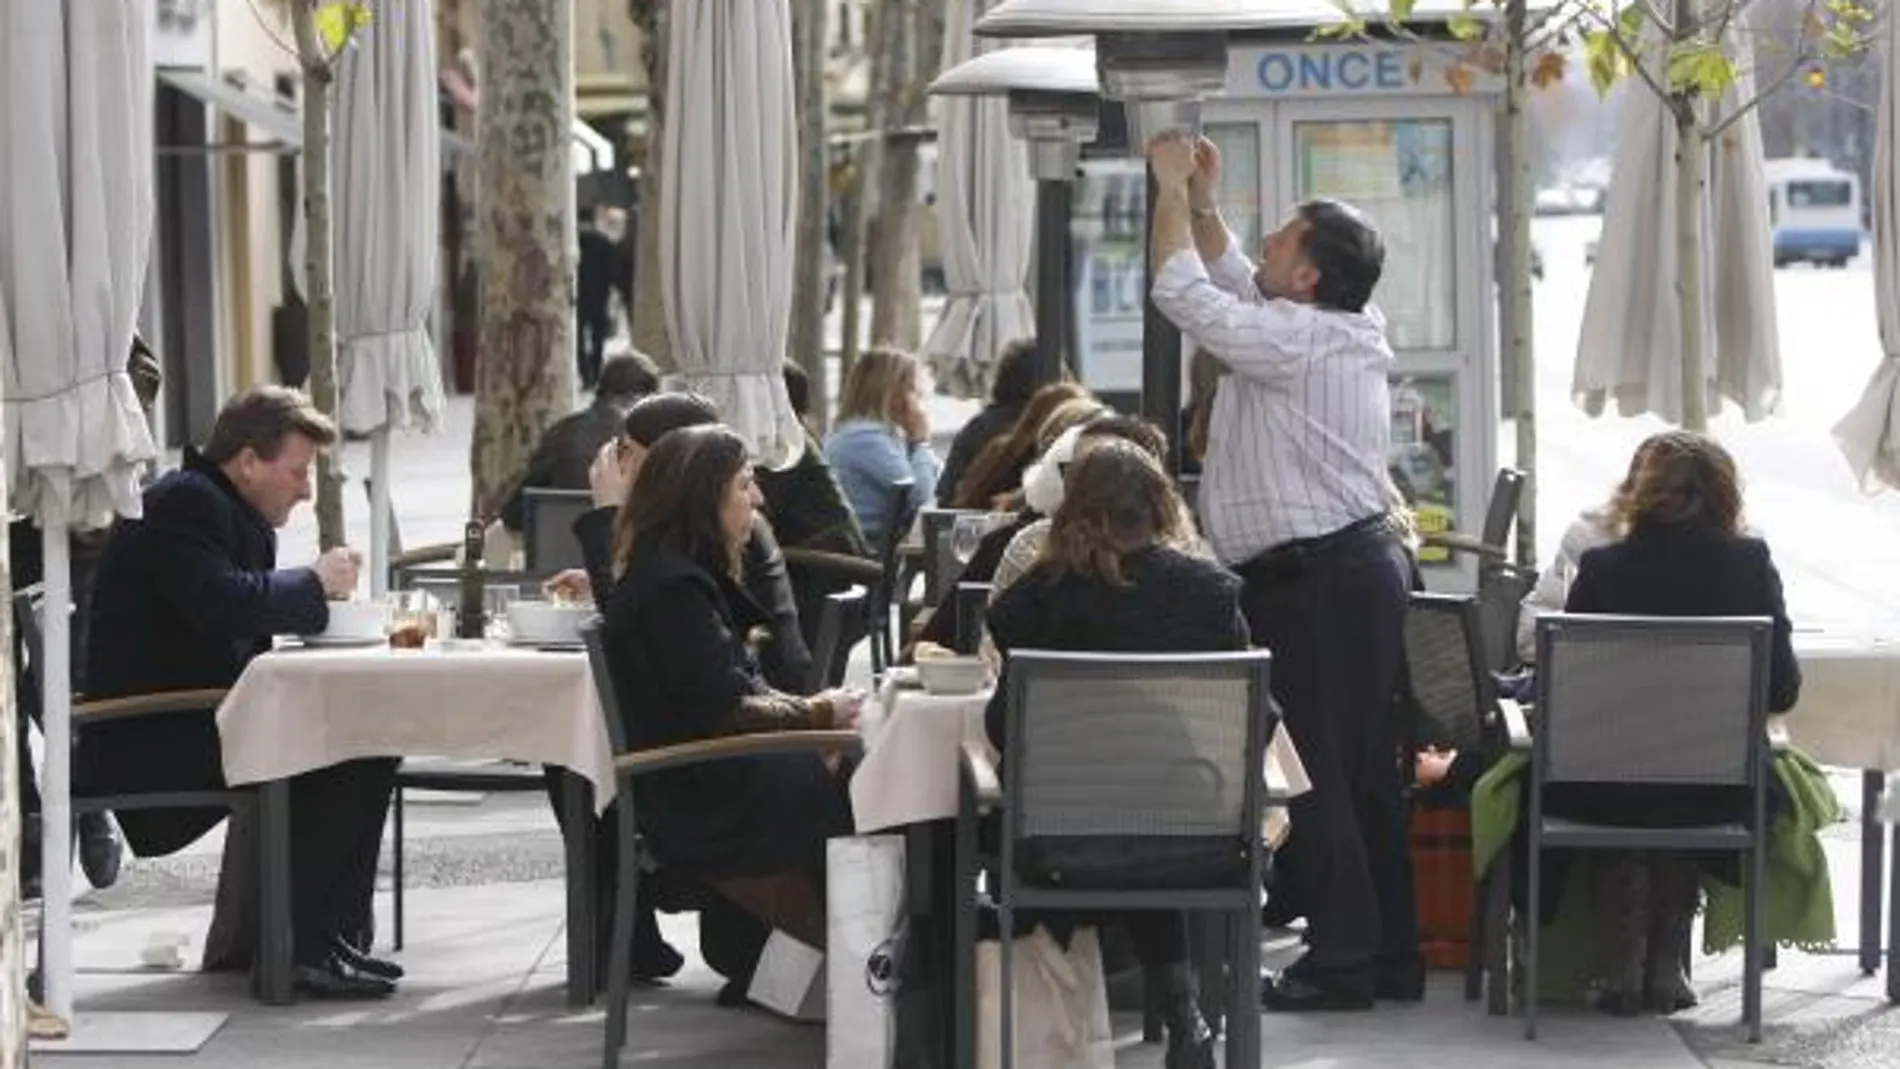 La prohibición de fumar en espacios públicos ha llevado a los fumadores a buscar locales con terrazas